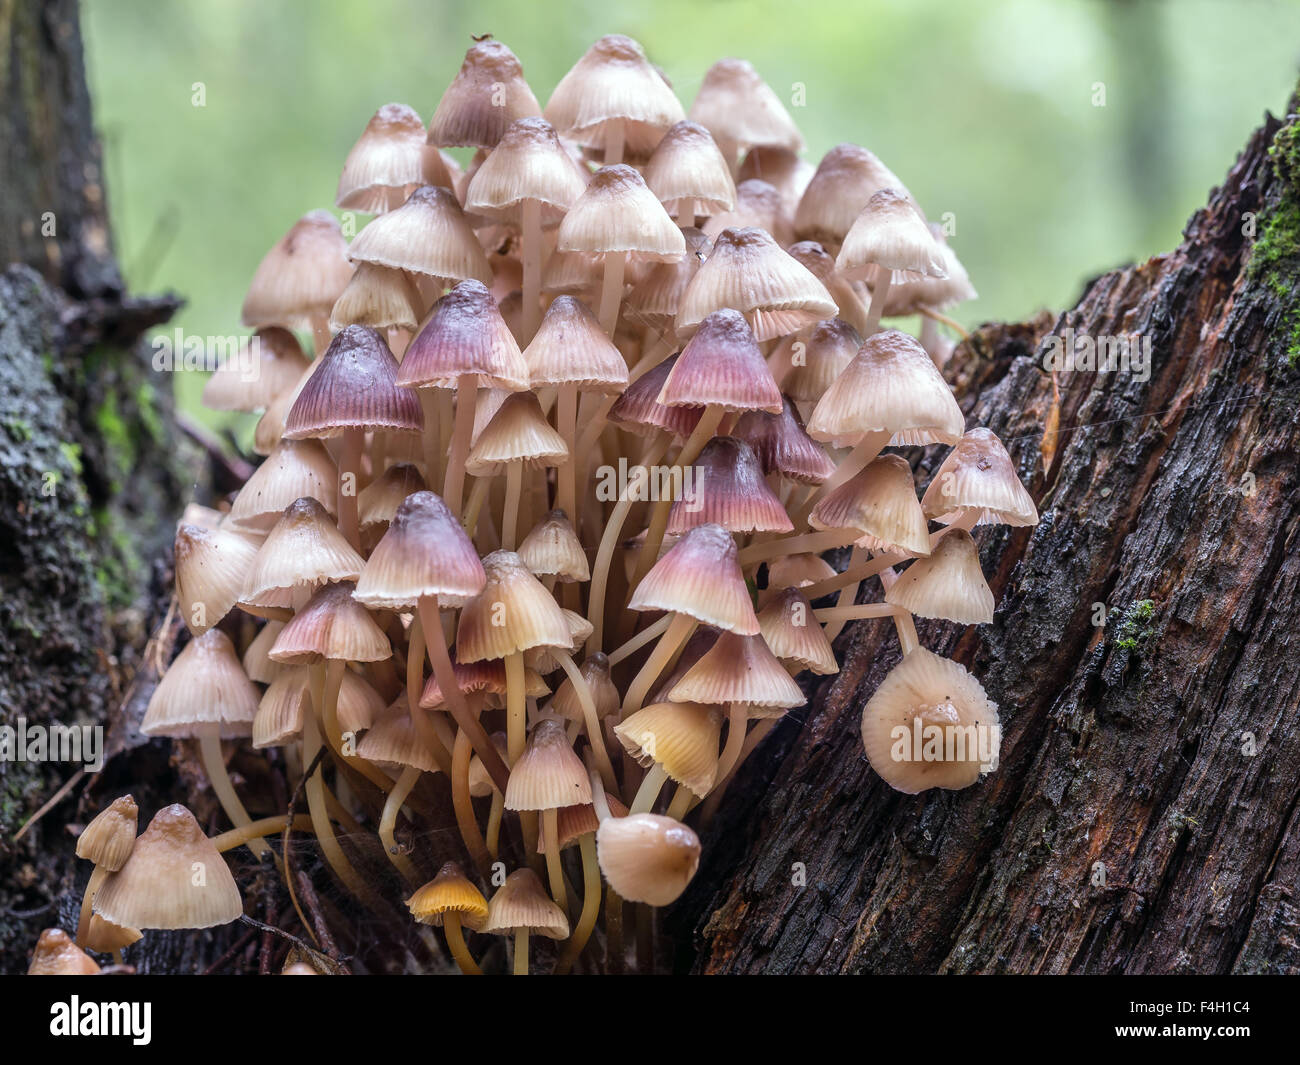 Groupe de toadstool champignons poussant dans la forêt Banque D'Images